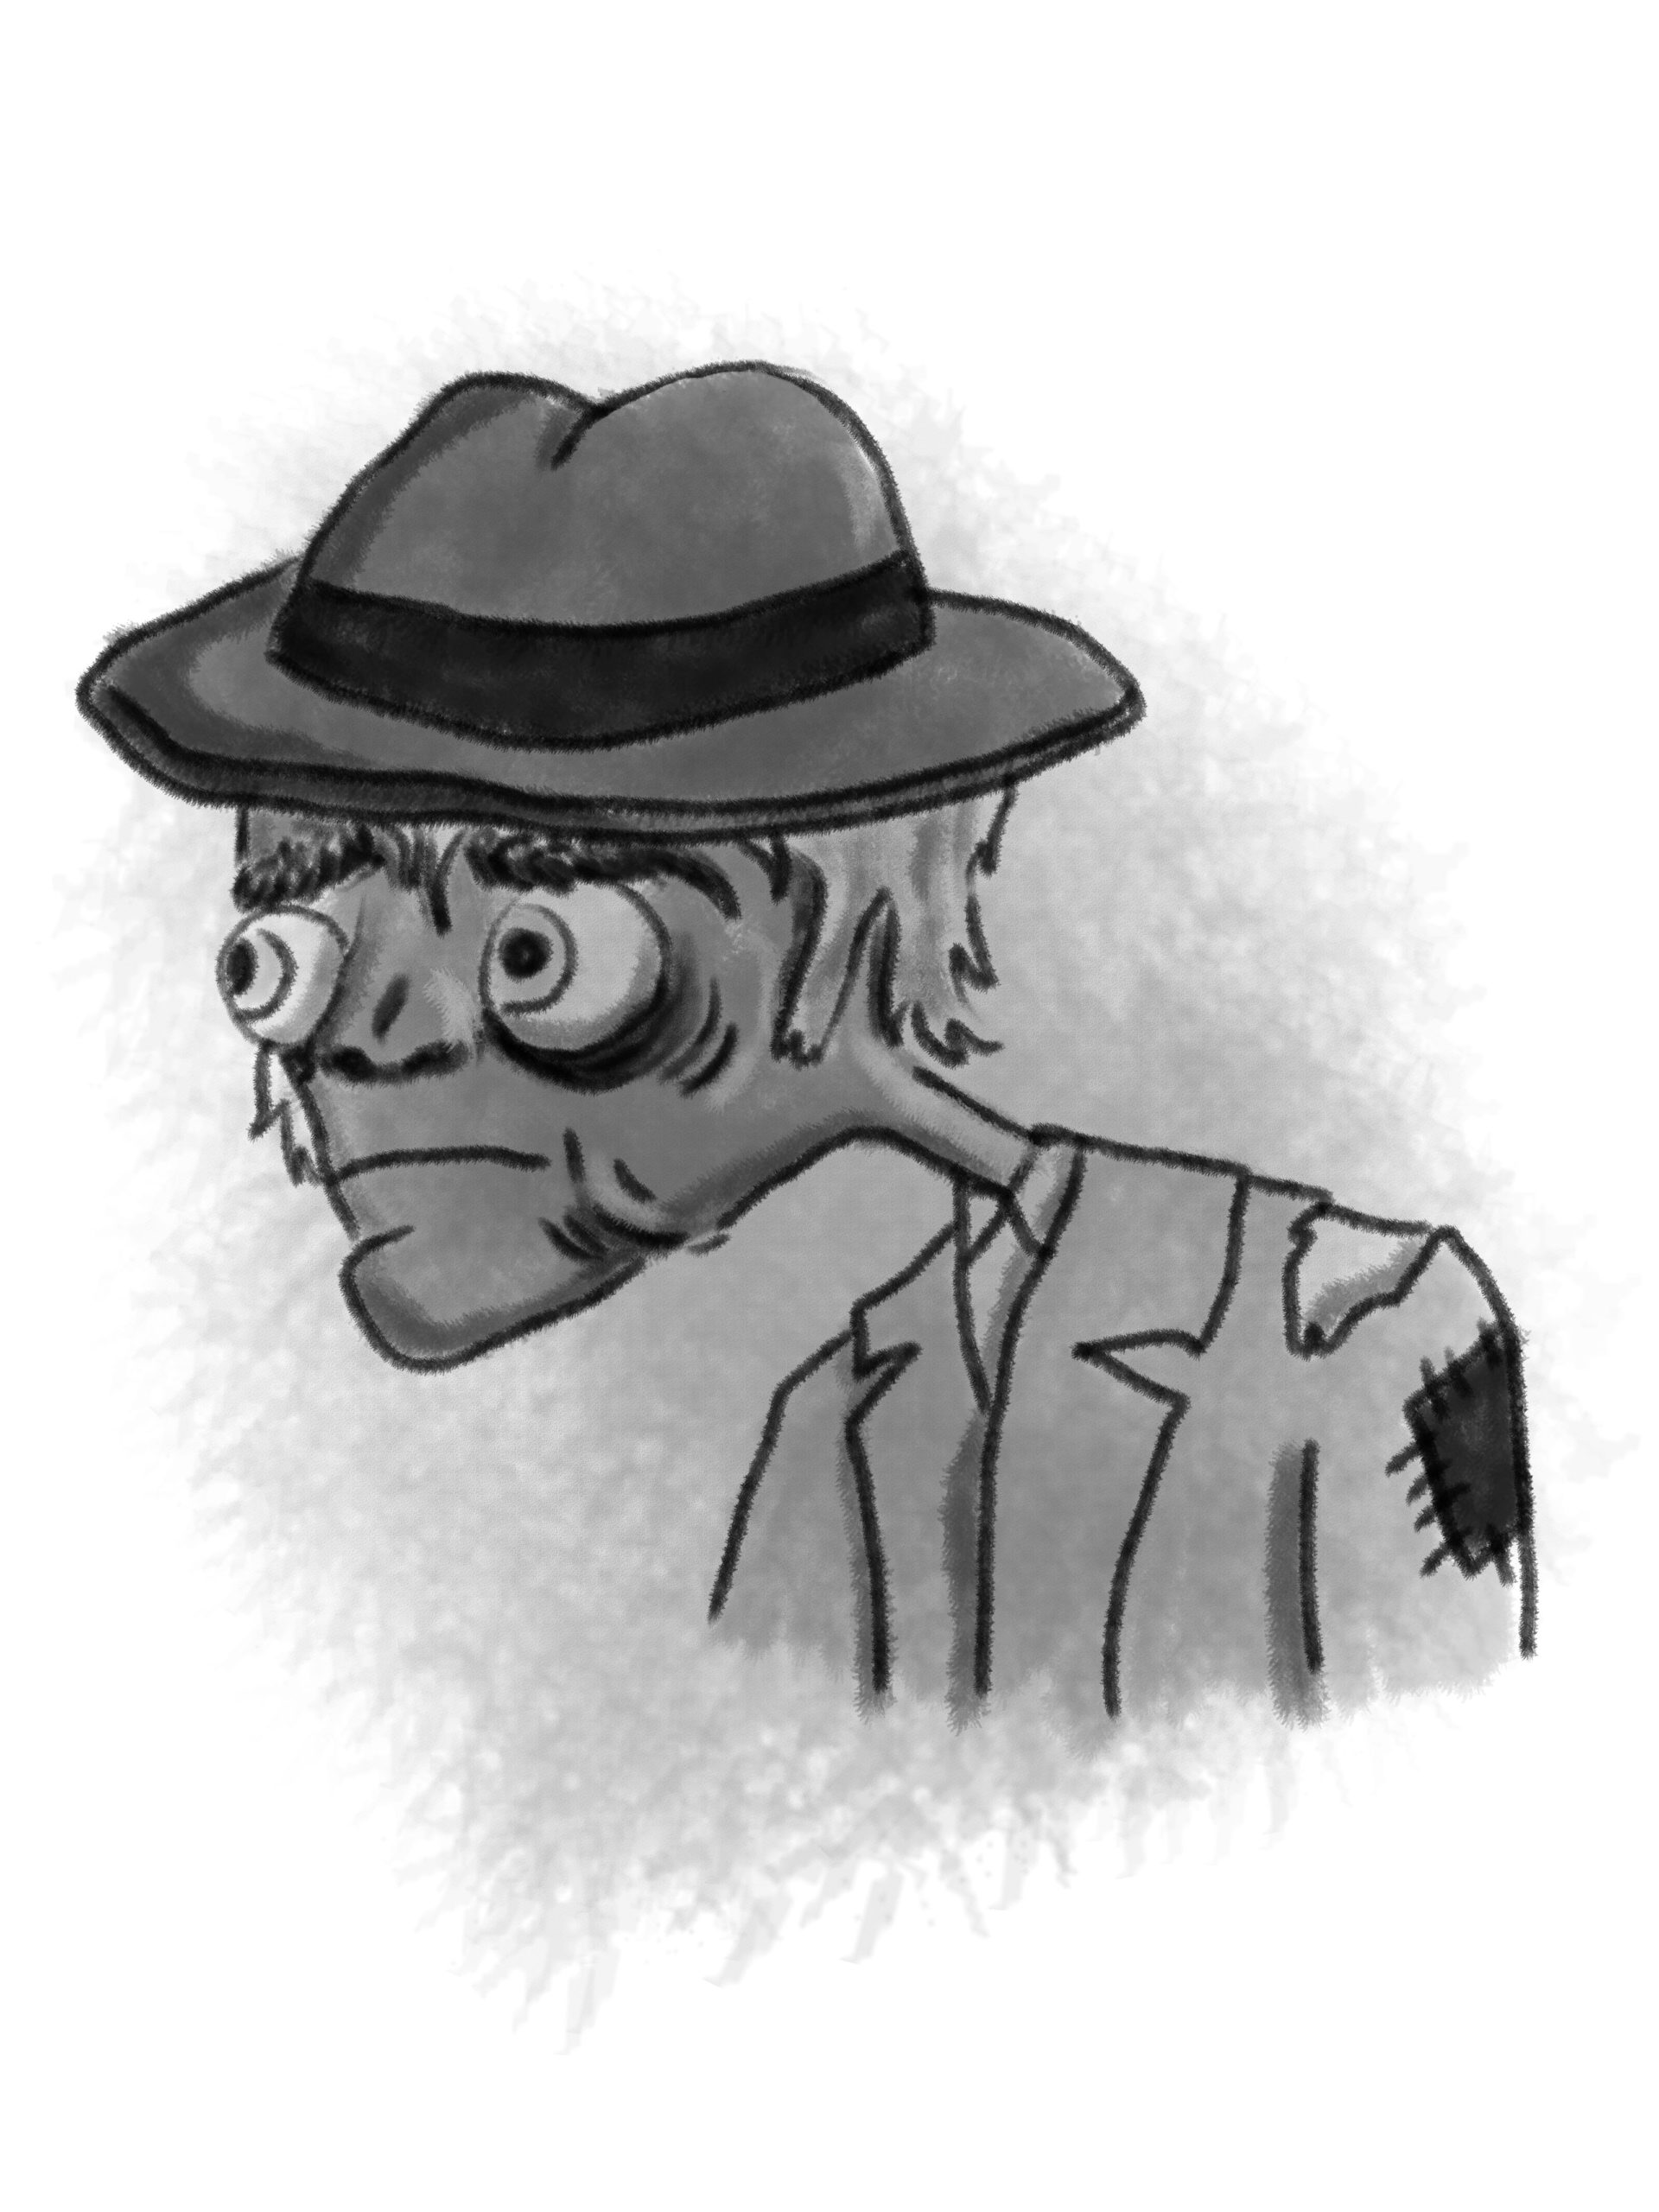 A weary man-zombie wearing a fedora hat.